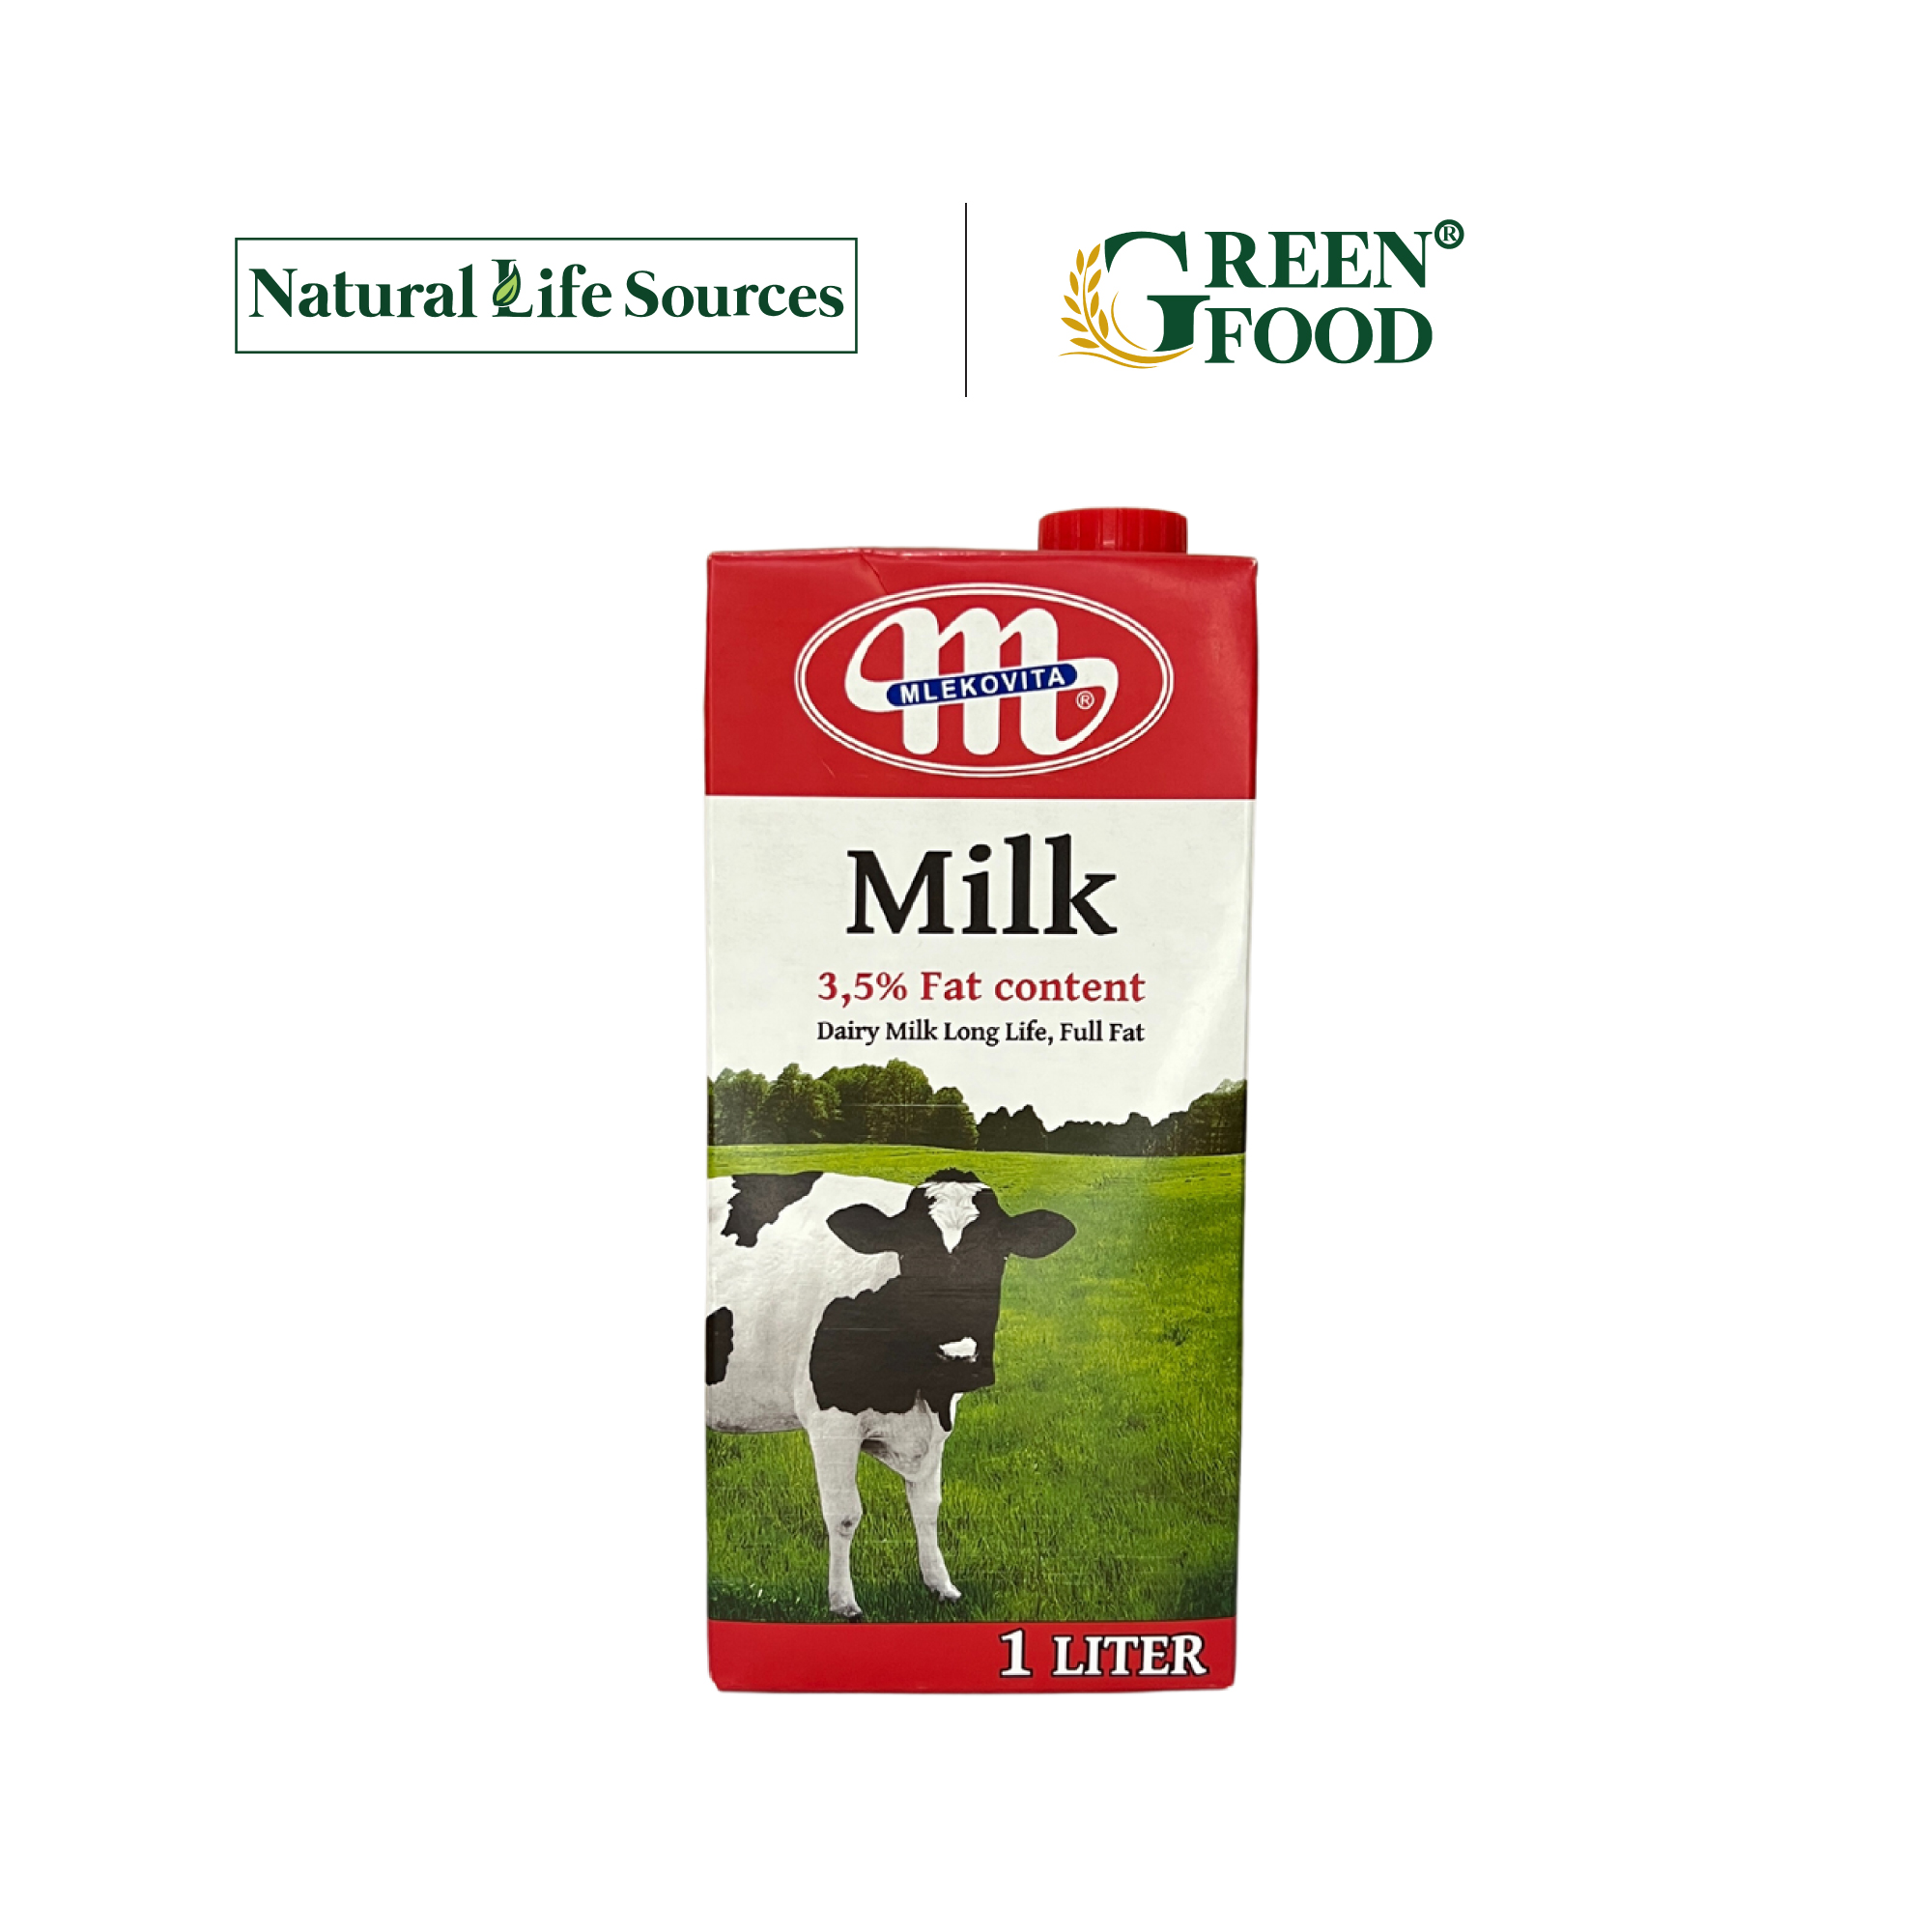 Thùng 12 Hộp Sữa Tươi Tiệt Trùng Nguyên Kem Không Đường Mlekovita - Độ béo 3.5% | Hộp 1L, nhập khẩu trực tiếp từ Ba Lan.